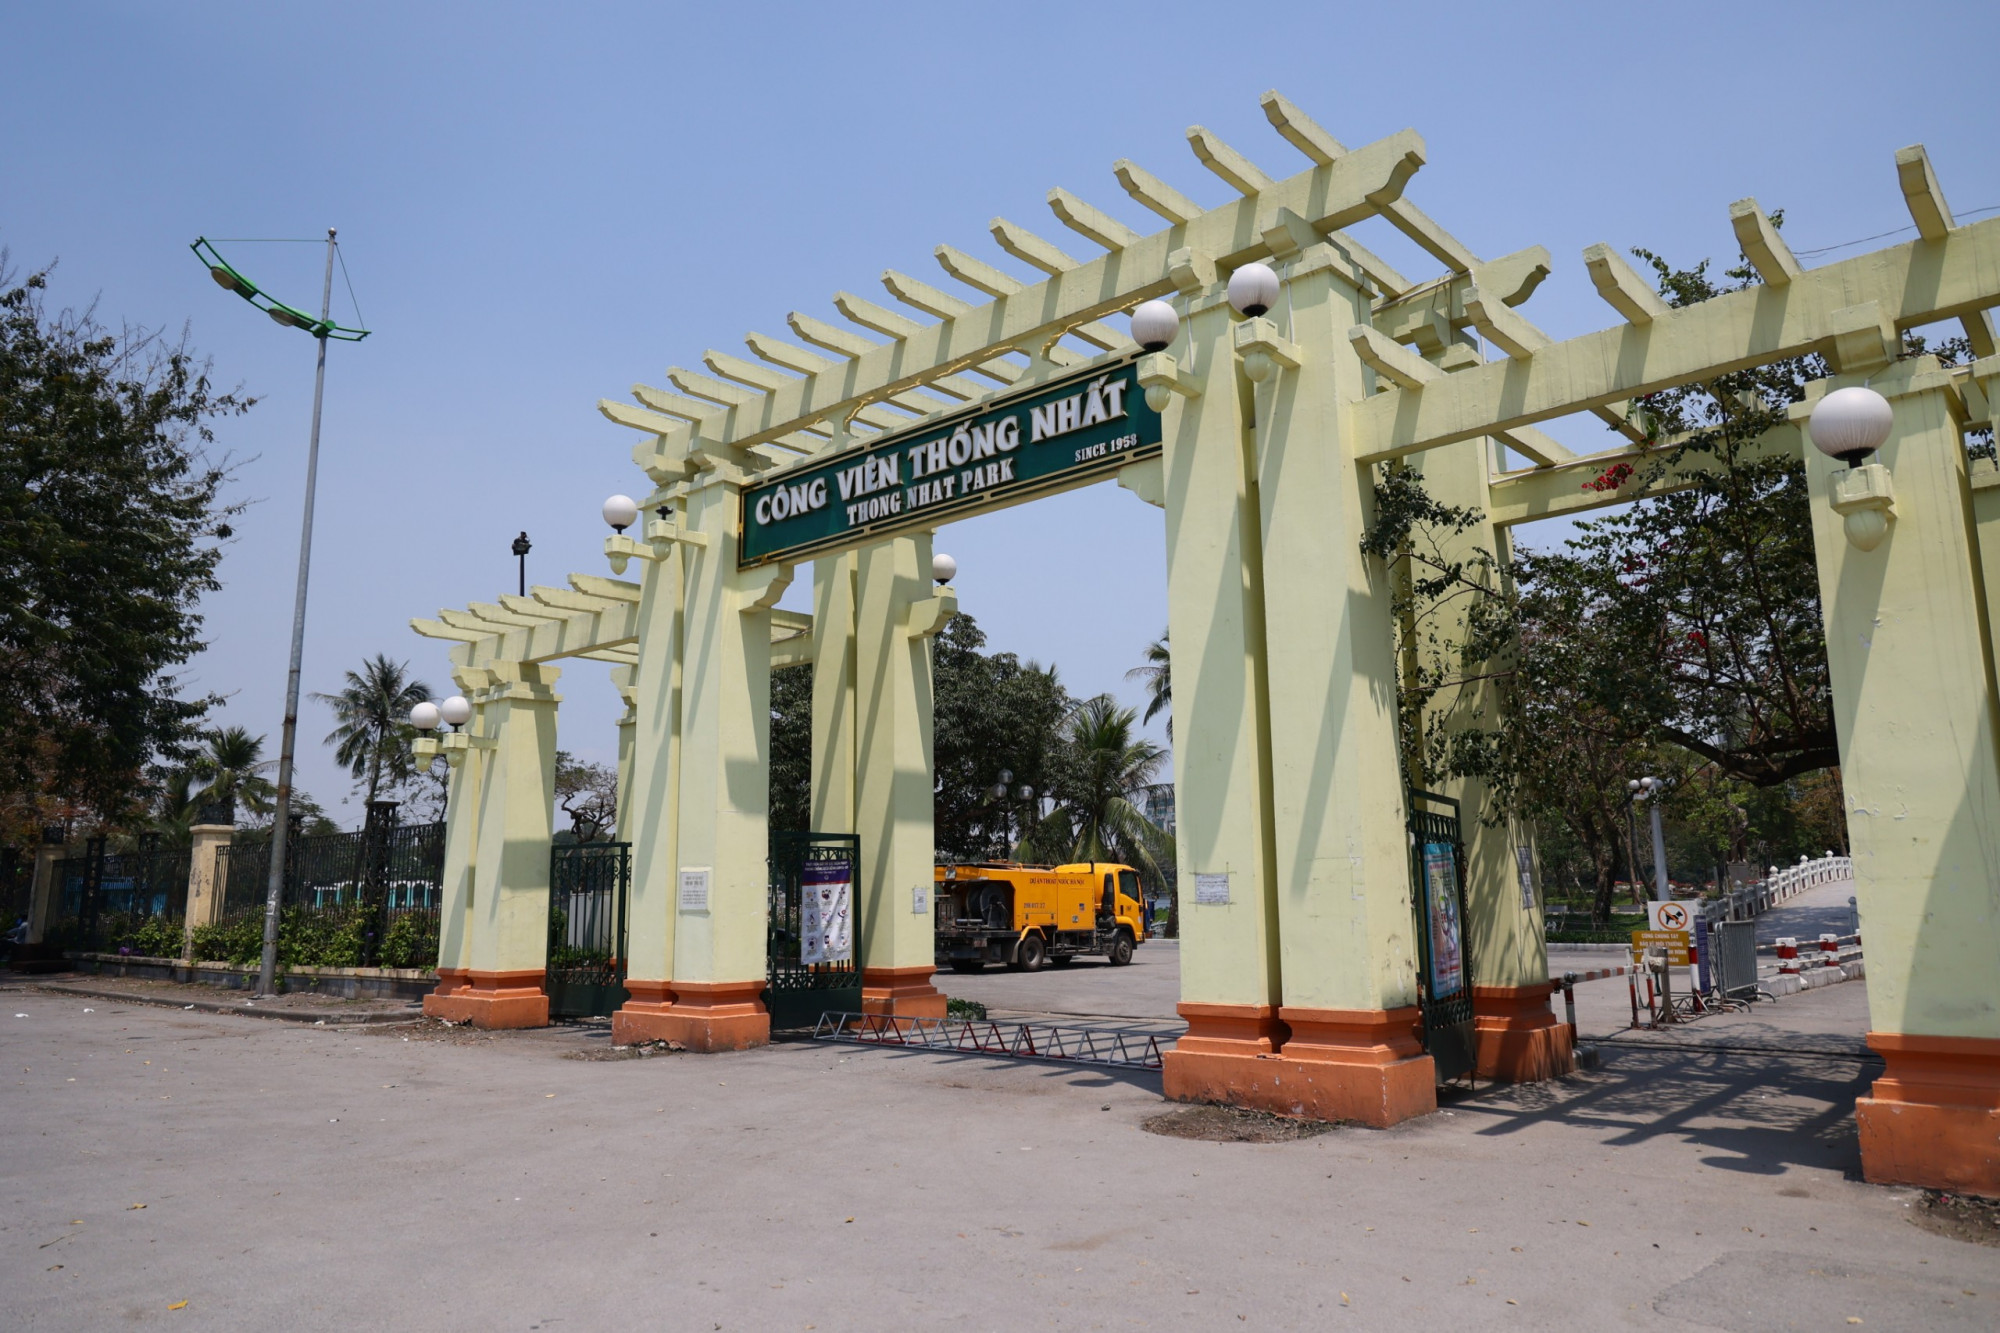 Công viên Thống Nhất (quận Hai Bà Trưng, Hà Nội) do Công ty TNHH một thành viên Công viên Thống Nhất quản lý, vận hành, có diện tích 482.043 m2.